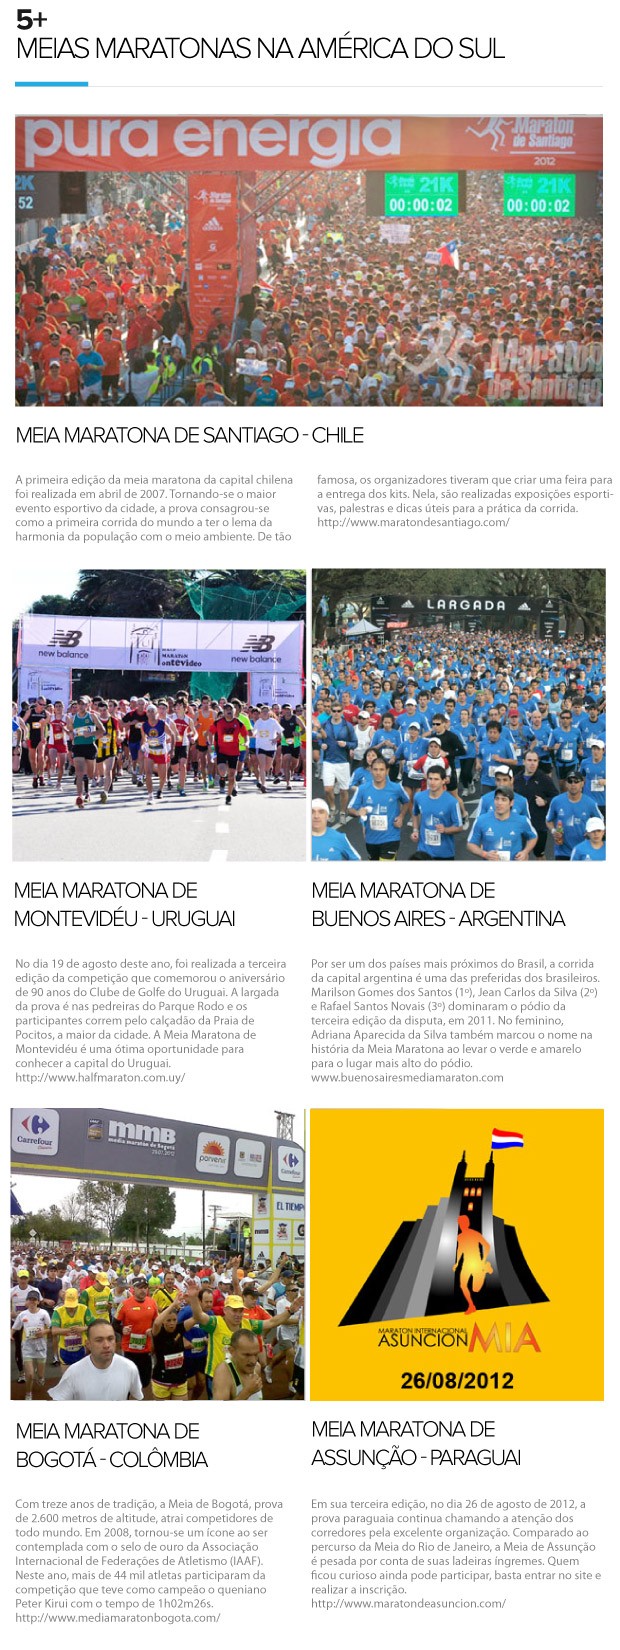 Eu Atleta, 5+ Meias Maratonas na América do Sul (Foto: Editoria de arte / Globoesporte.com)